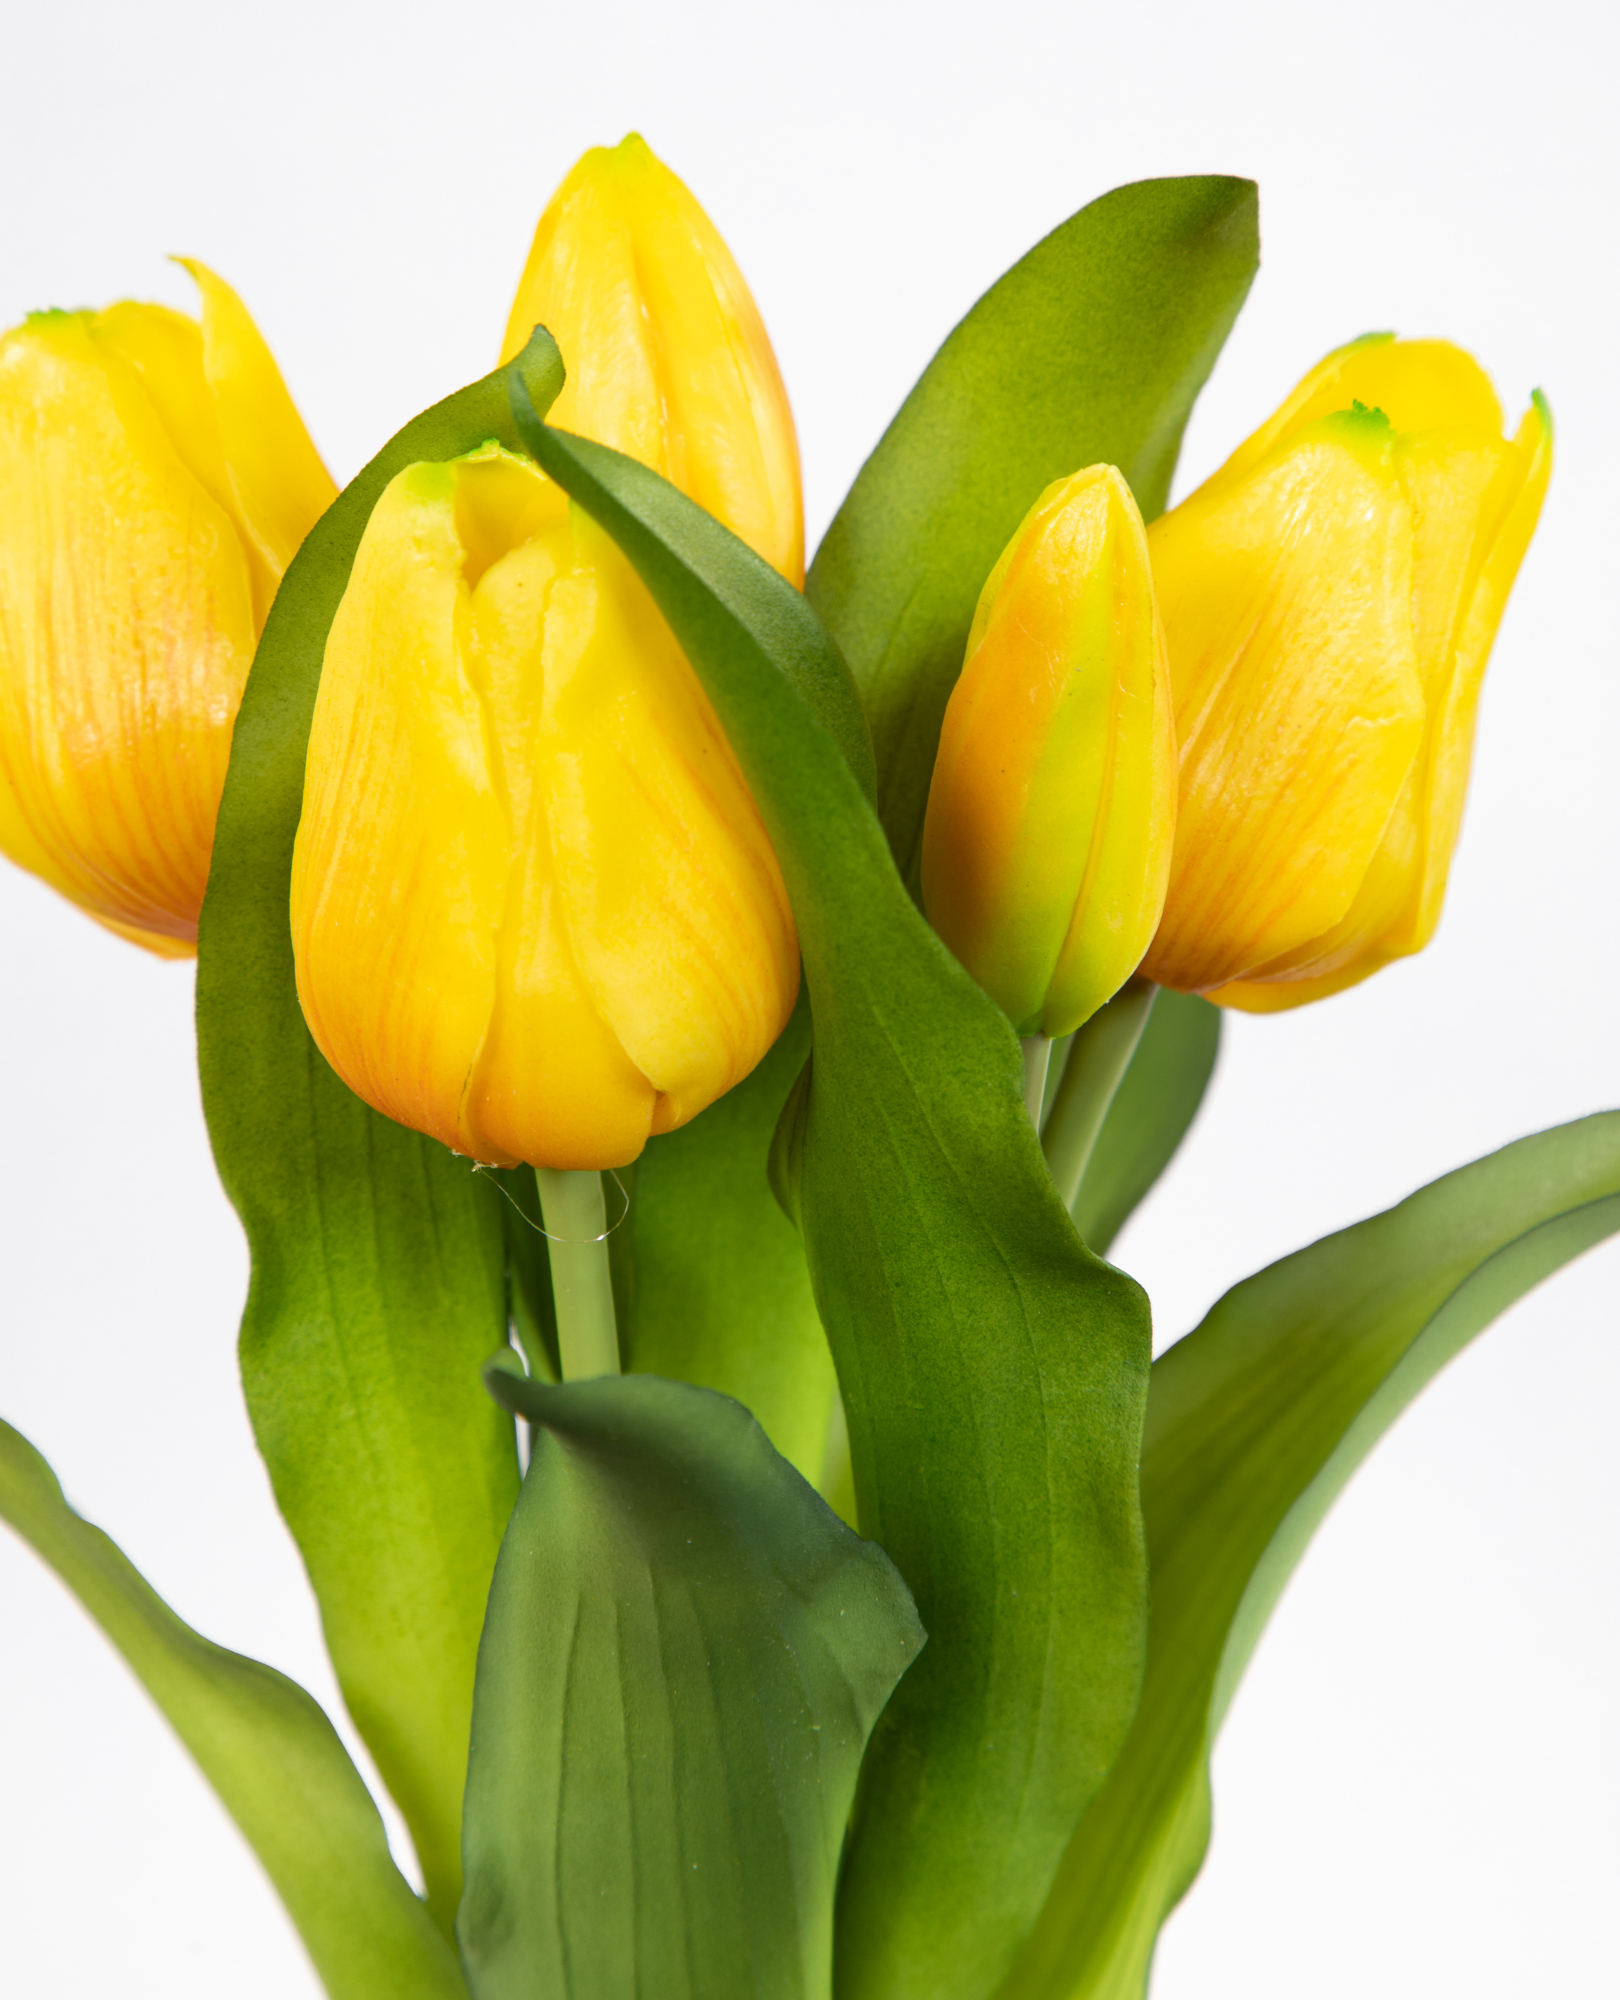 mit Latex DP gelb Nature 5 Blumen Tulpenbund künstliche 32x20cm Touch Kunstblumen Real Tulpen Blüten